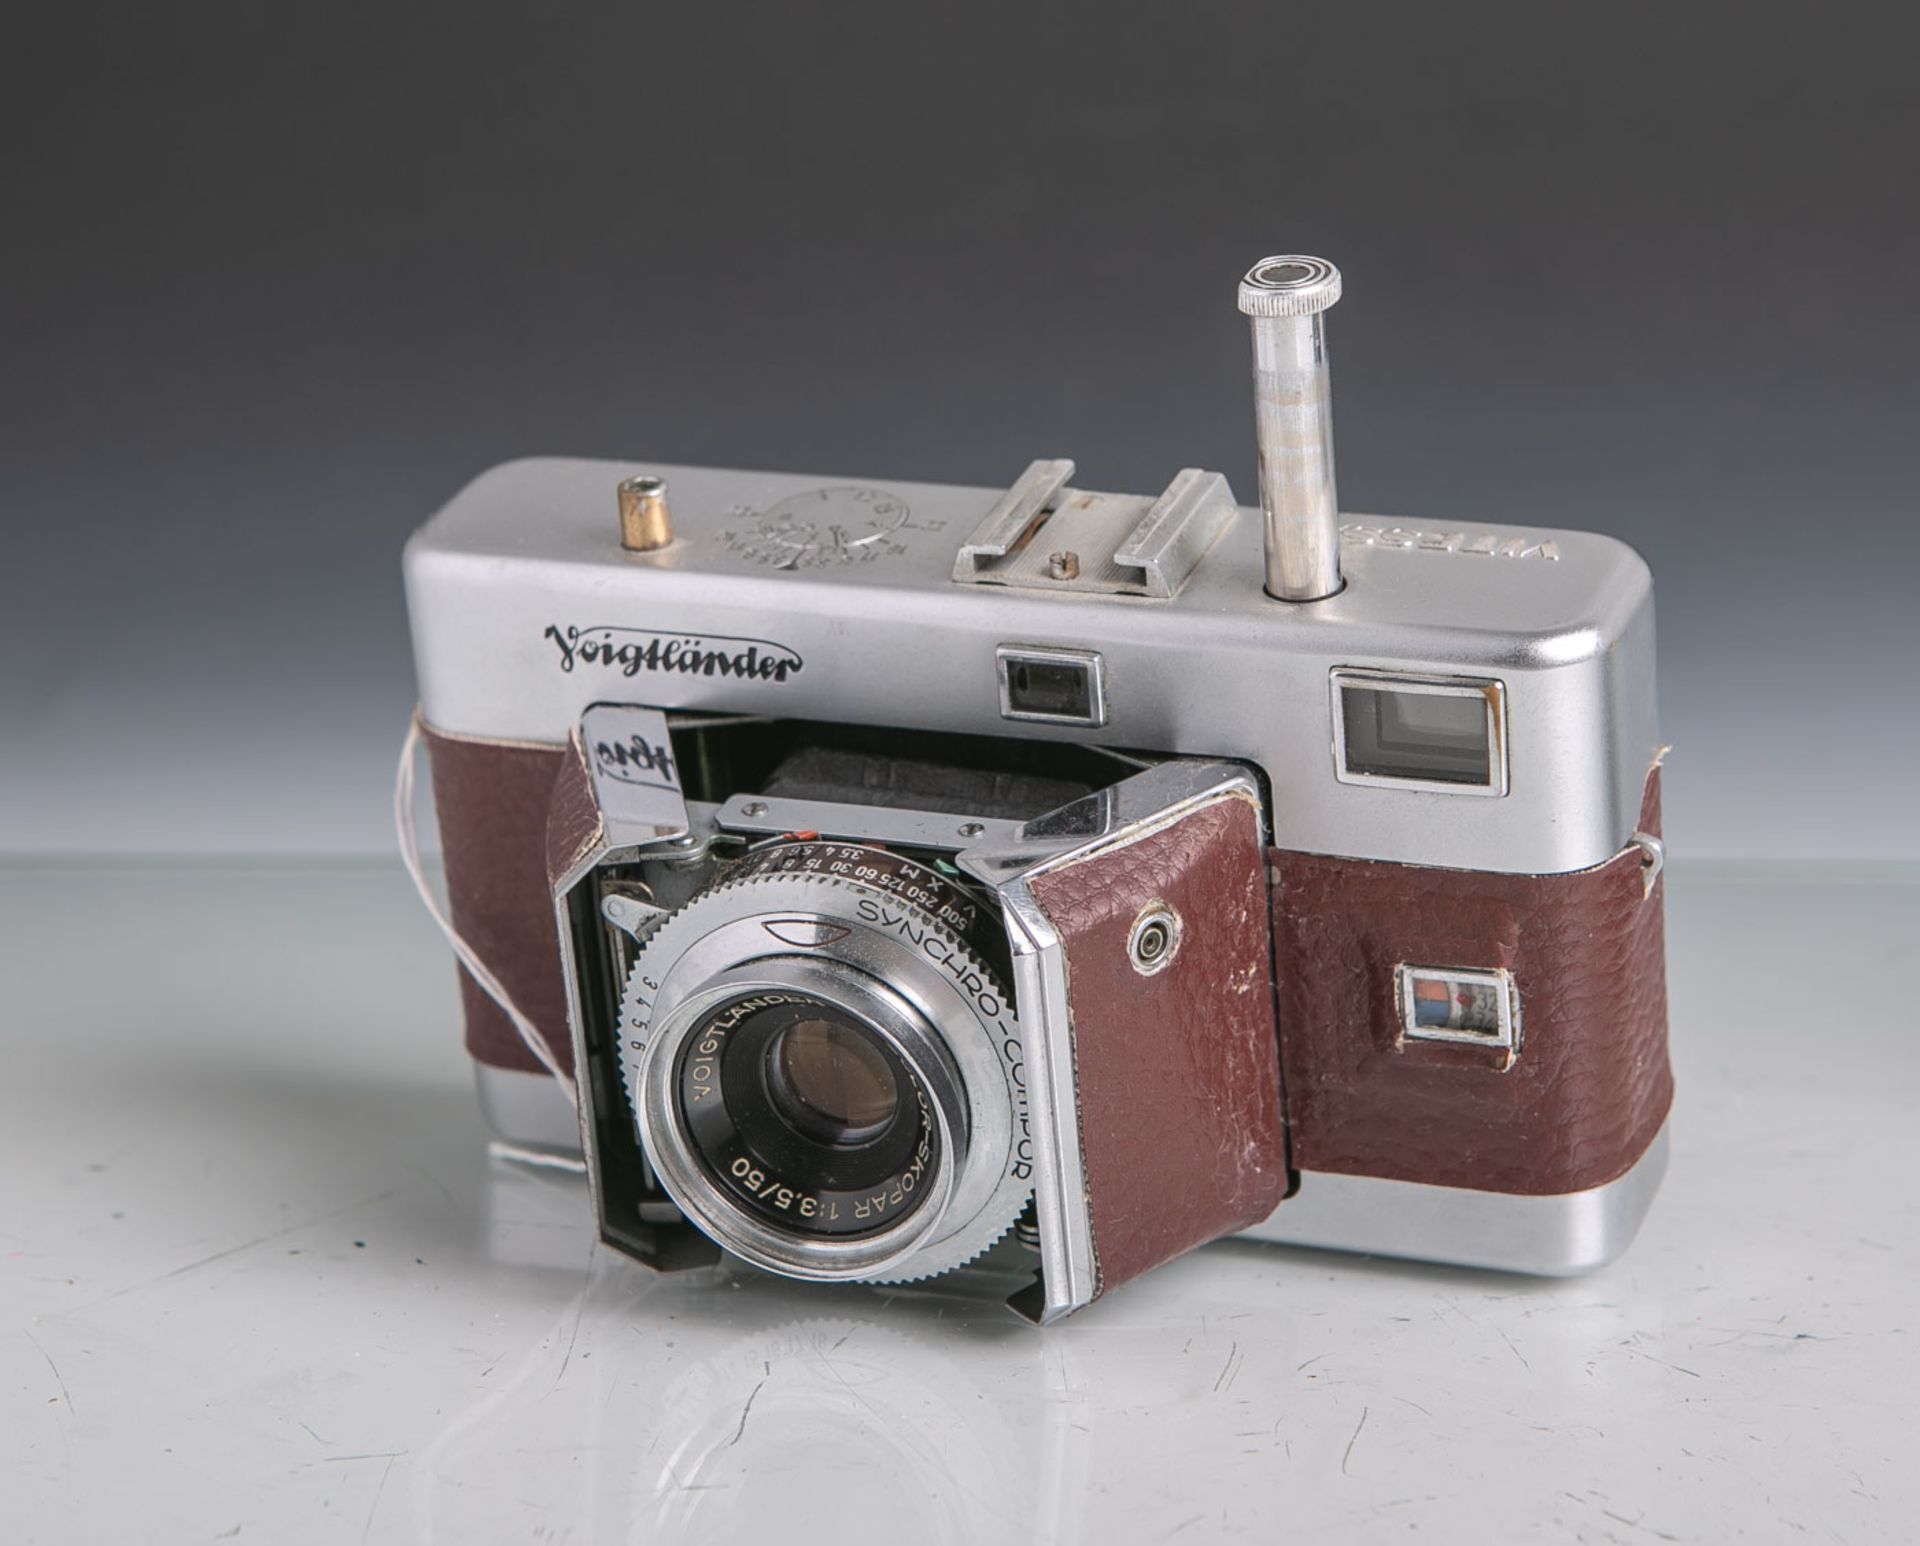 Voigtlaender Vitessa-Fotokamera (Braunschweig, wohl 1953-55), erstes Modell,Messsucherkamera, mit